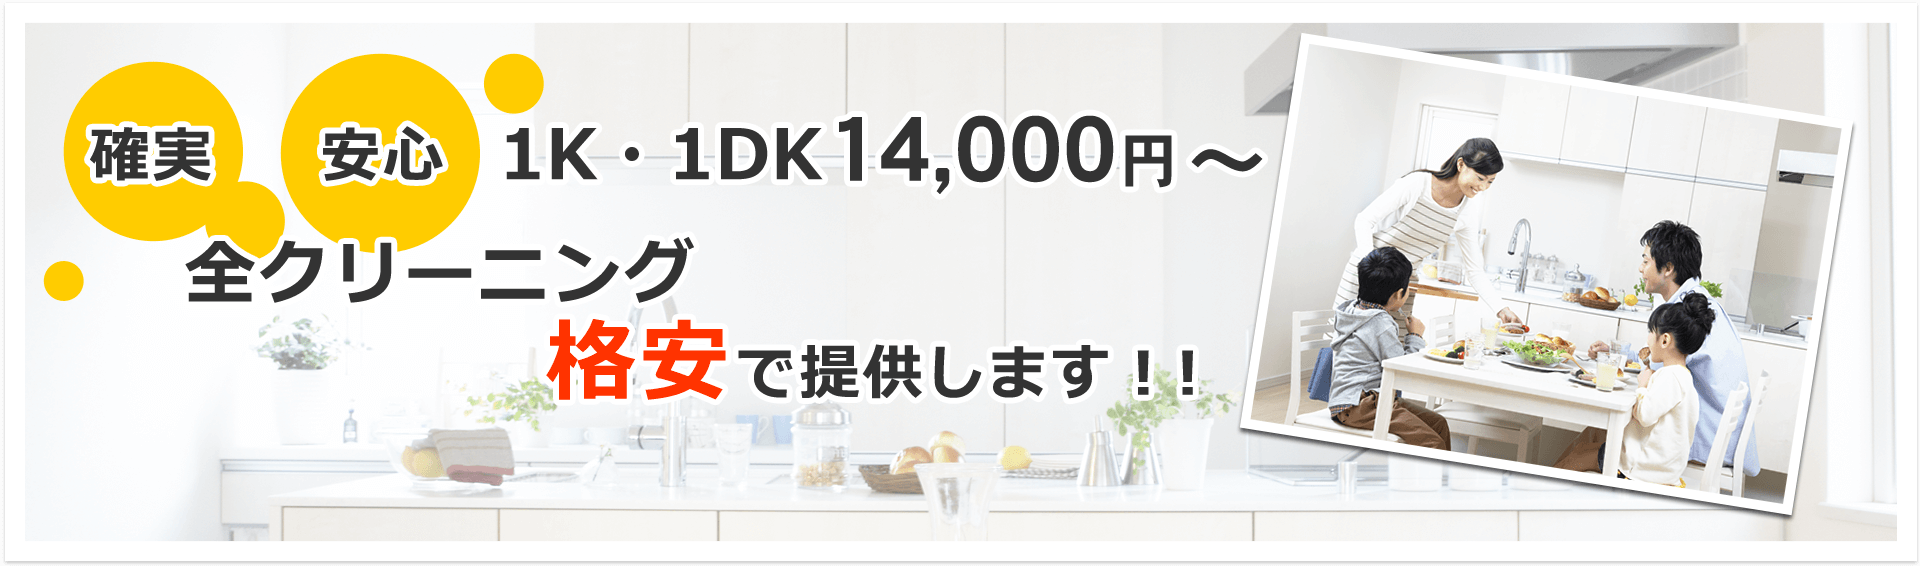 確実、安心、1K・1DK 12,000円〜 全クリーニング格安で提供します。